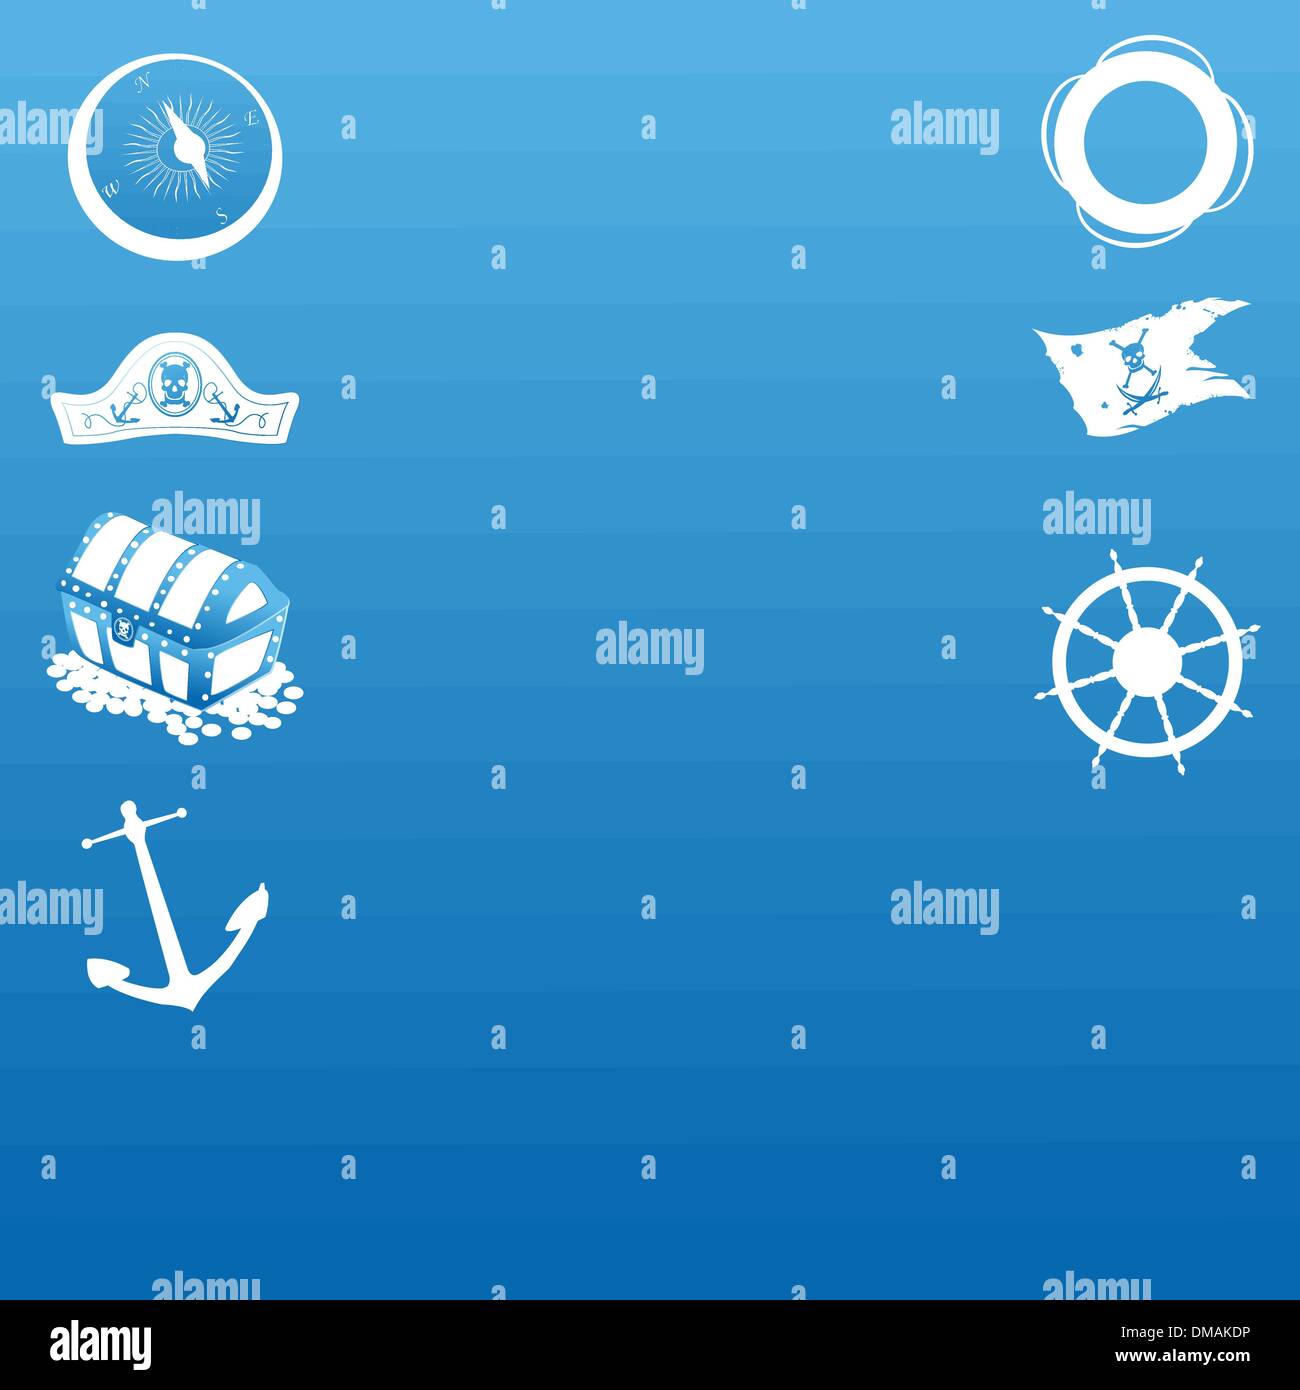 Sailing symbols Stock Vector